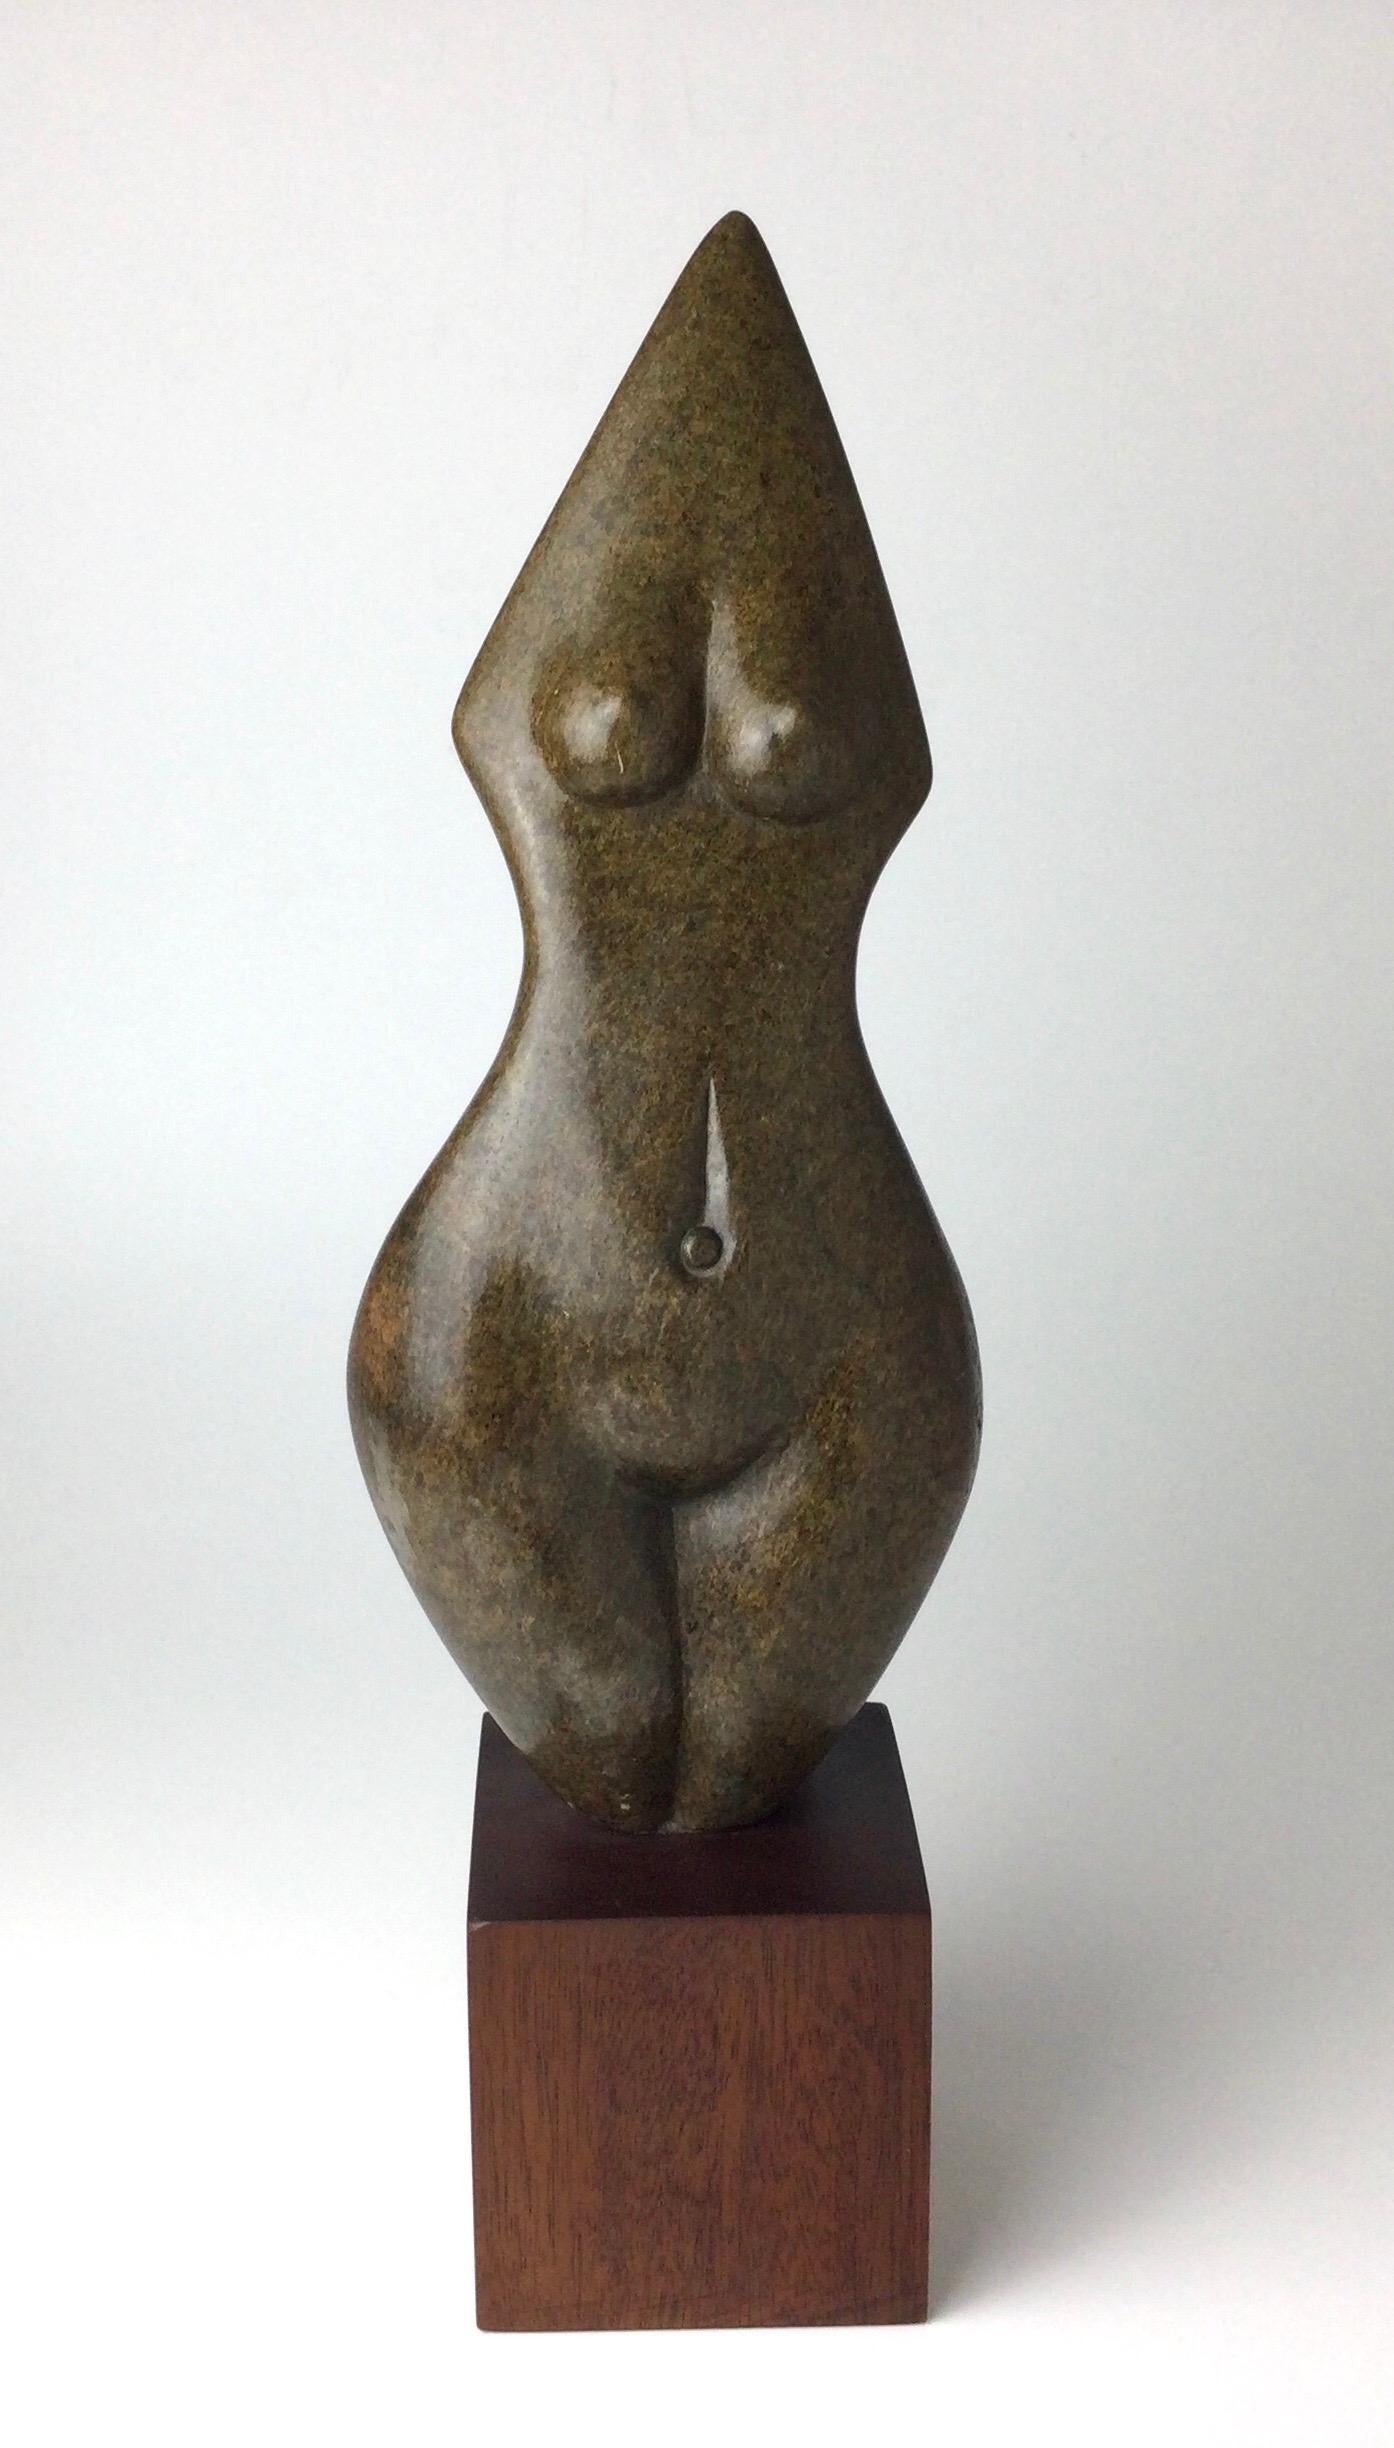 Zimbabwean Brown Serpentine”Torso” Sculpture by Mitsaiati Kagore